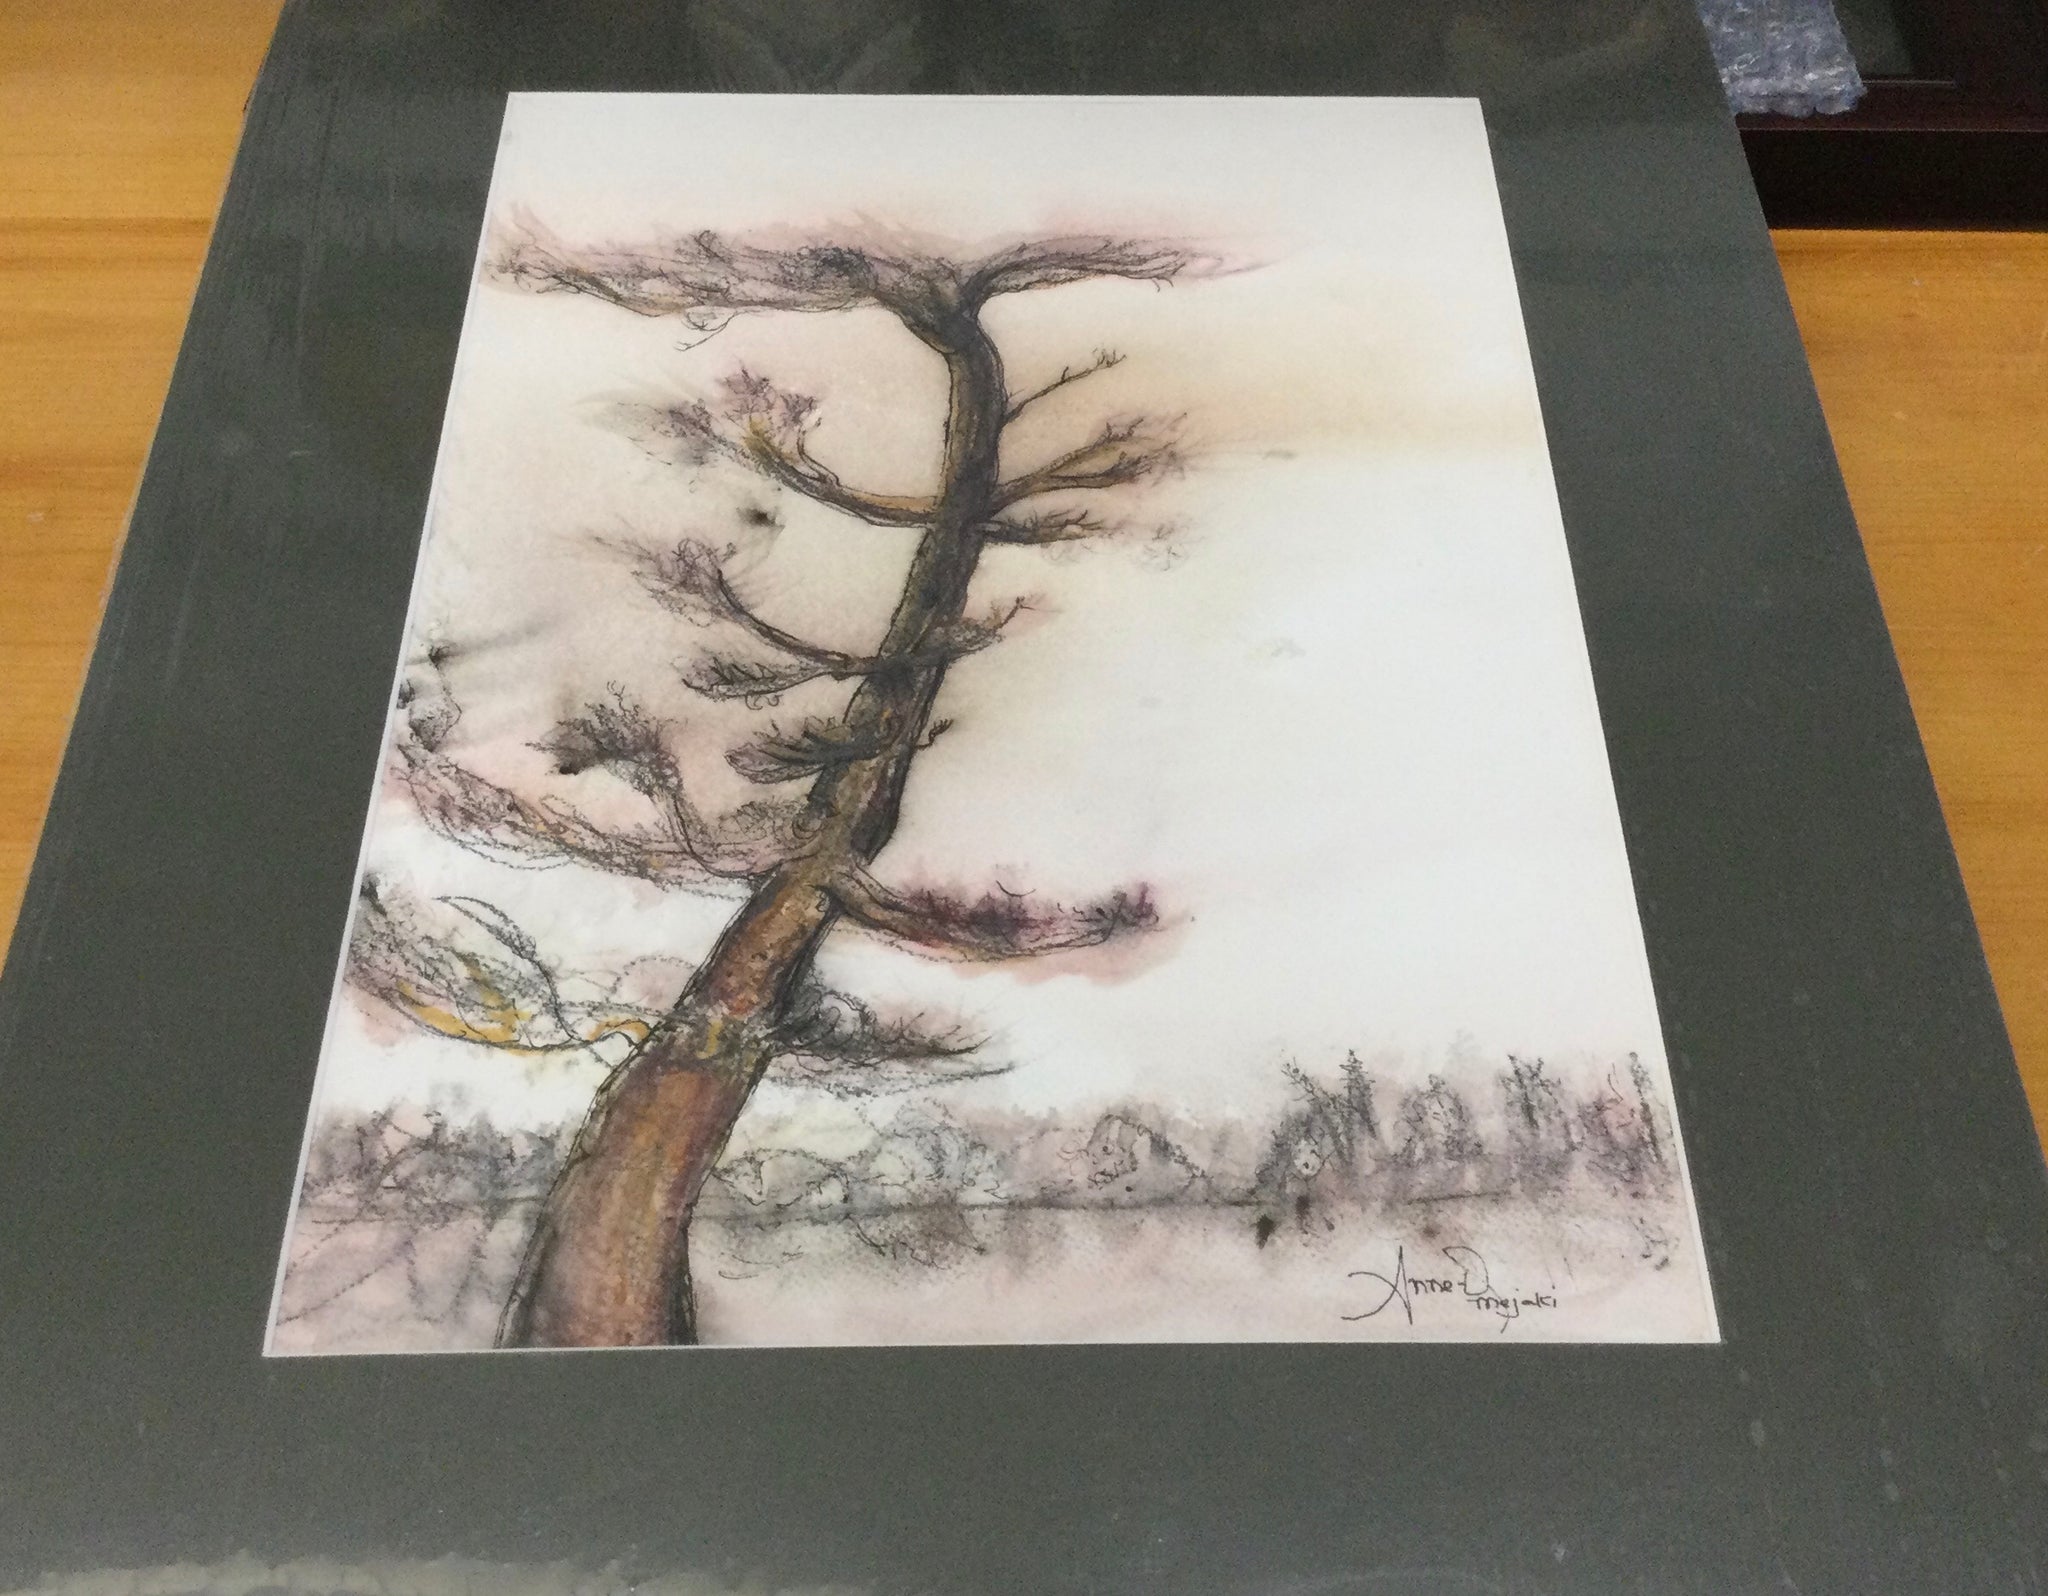 Pine tree - watercolour by Anne-Denise Mejaki